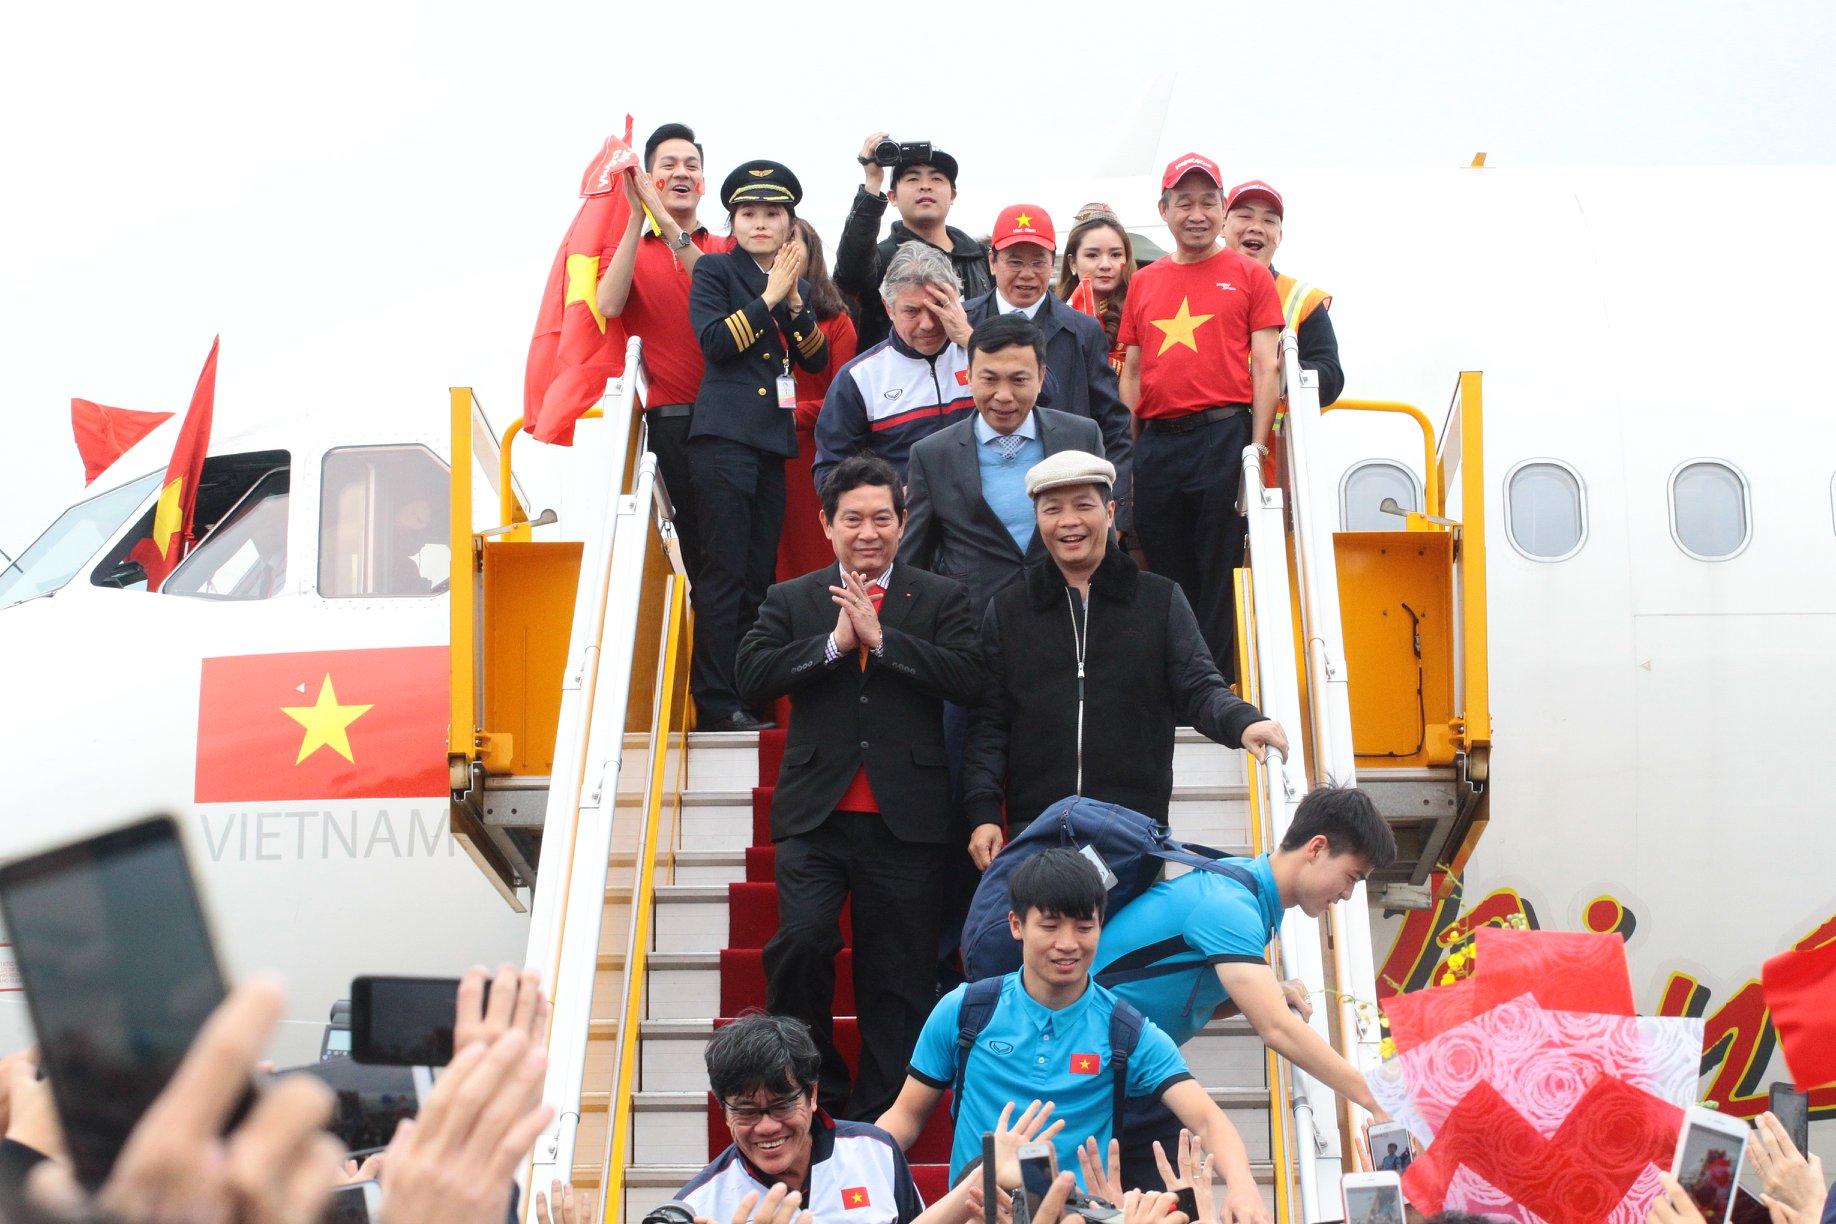 Khoảnh khắc những người hùng U23 Việt Nam xuất hiện tại Nội Bài - 6